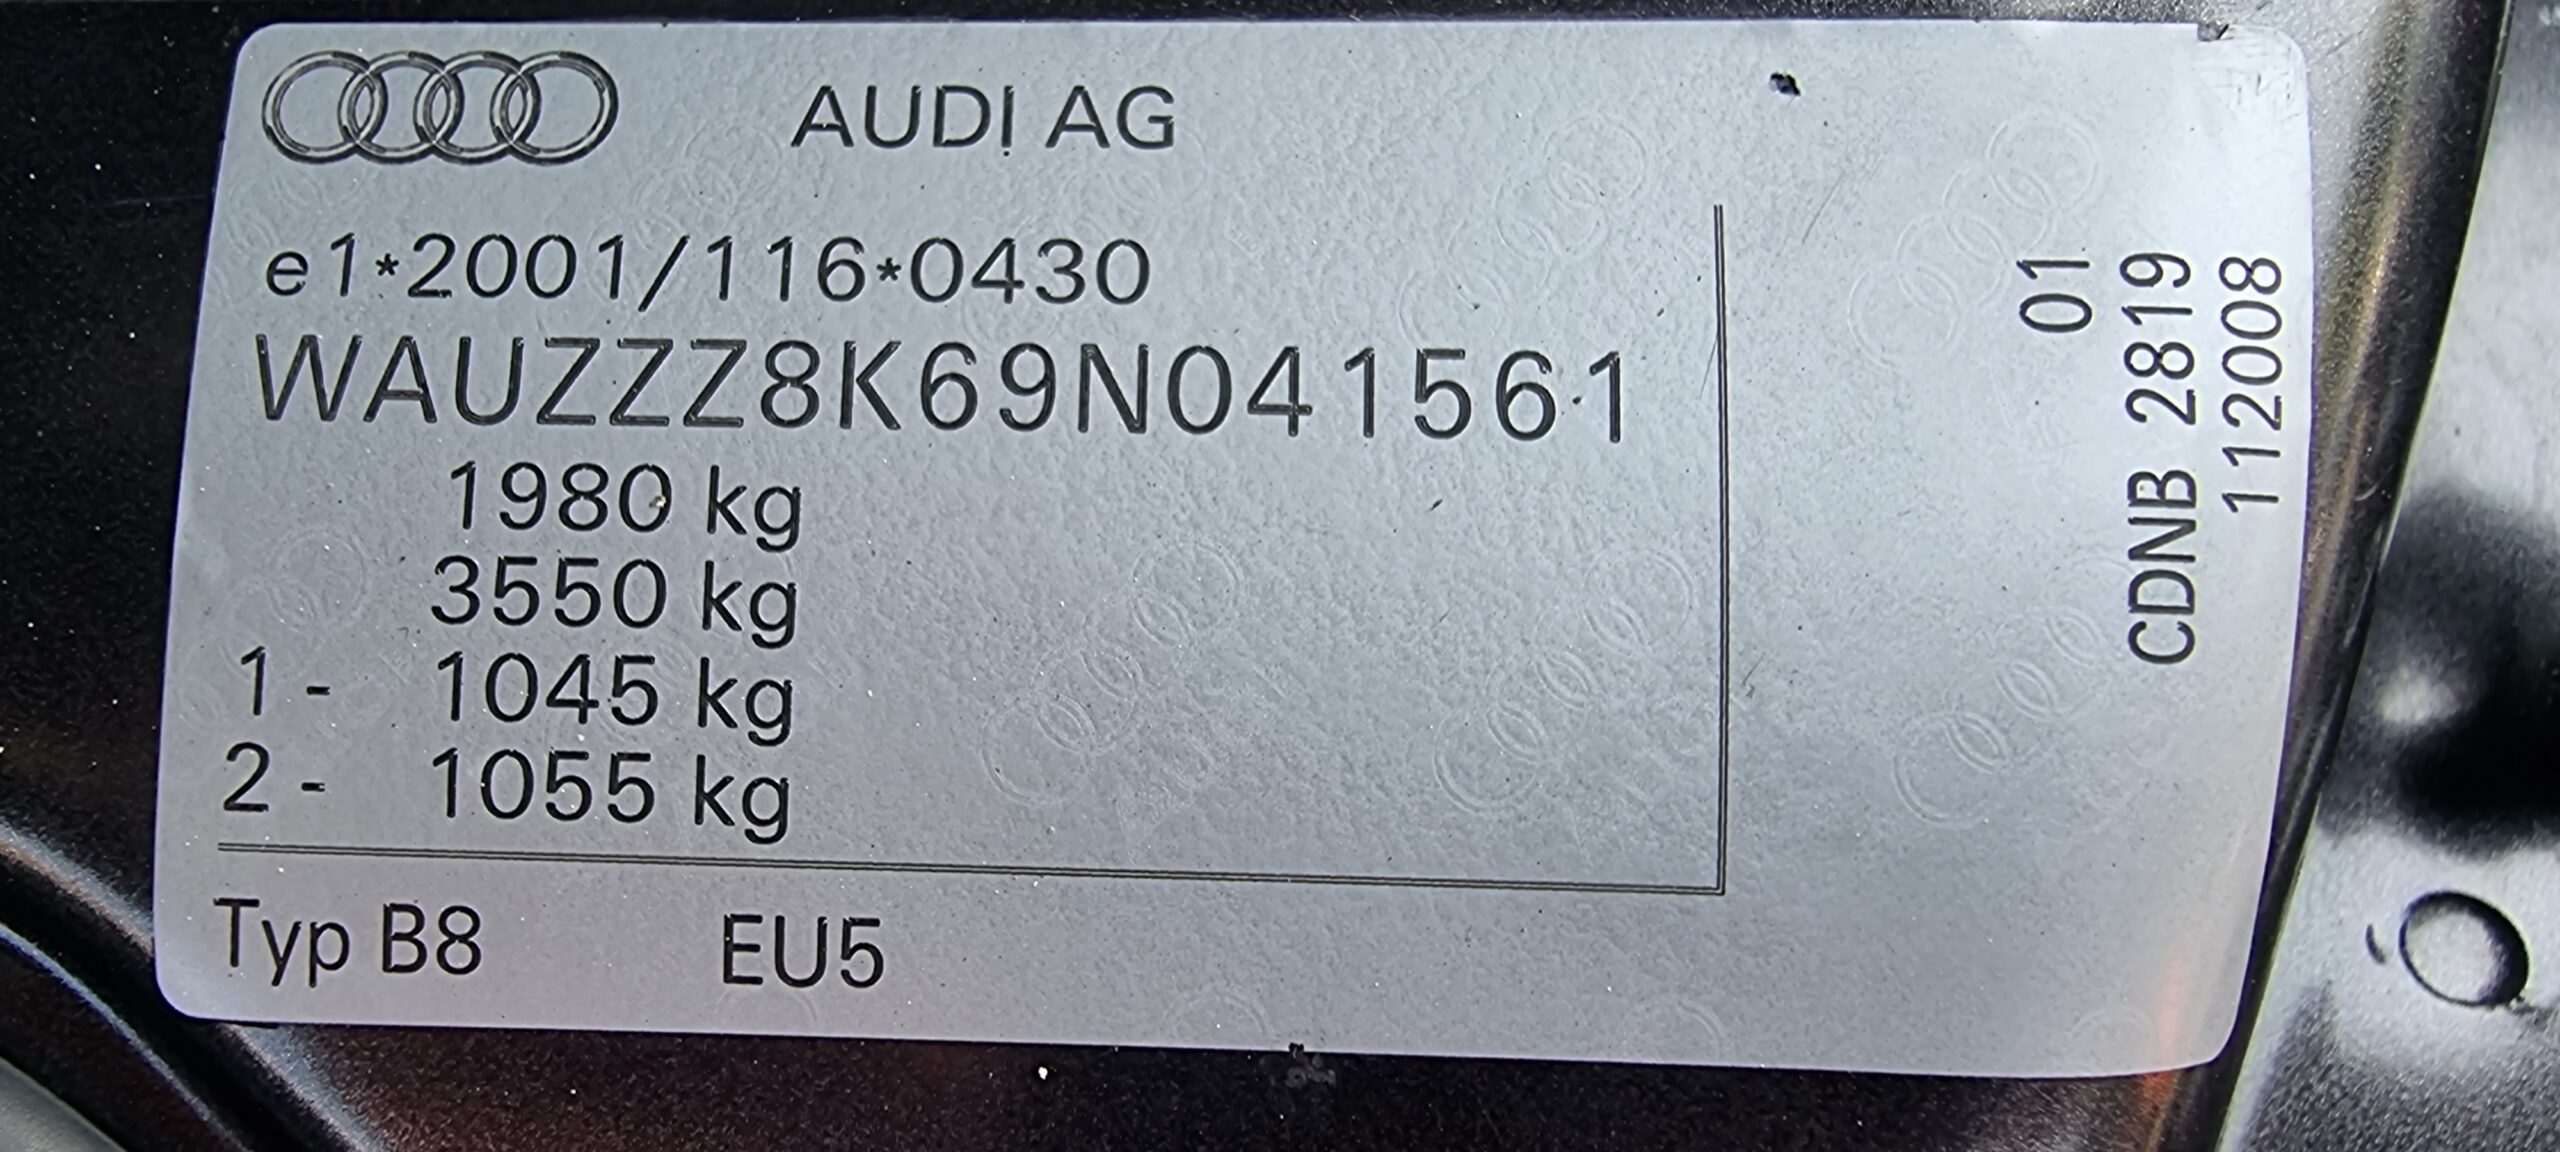 AUDI A4 2.0 TFSI, 280 CP, EURO 5